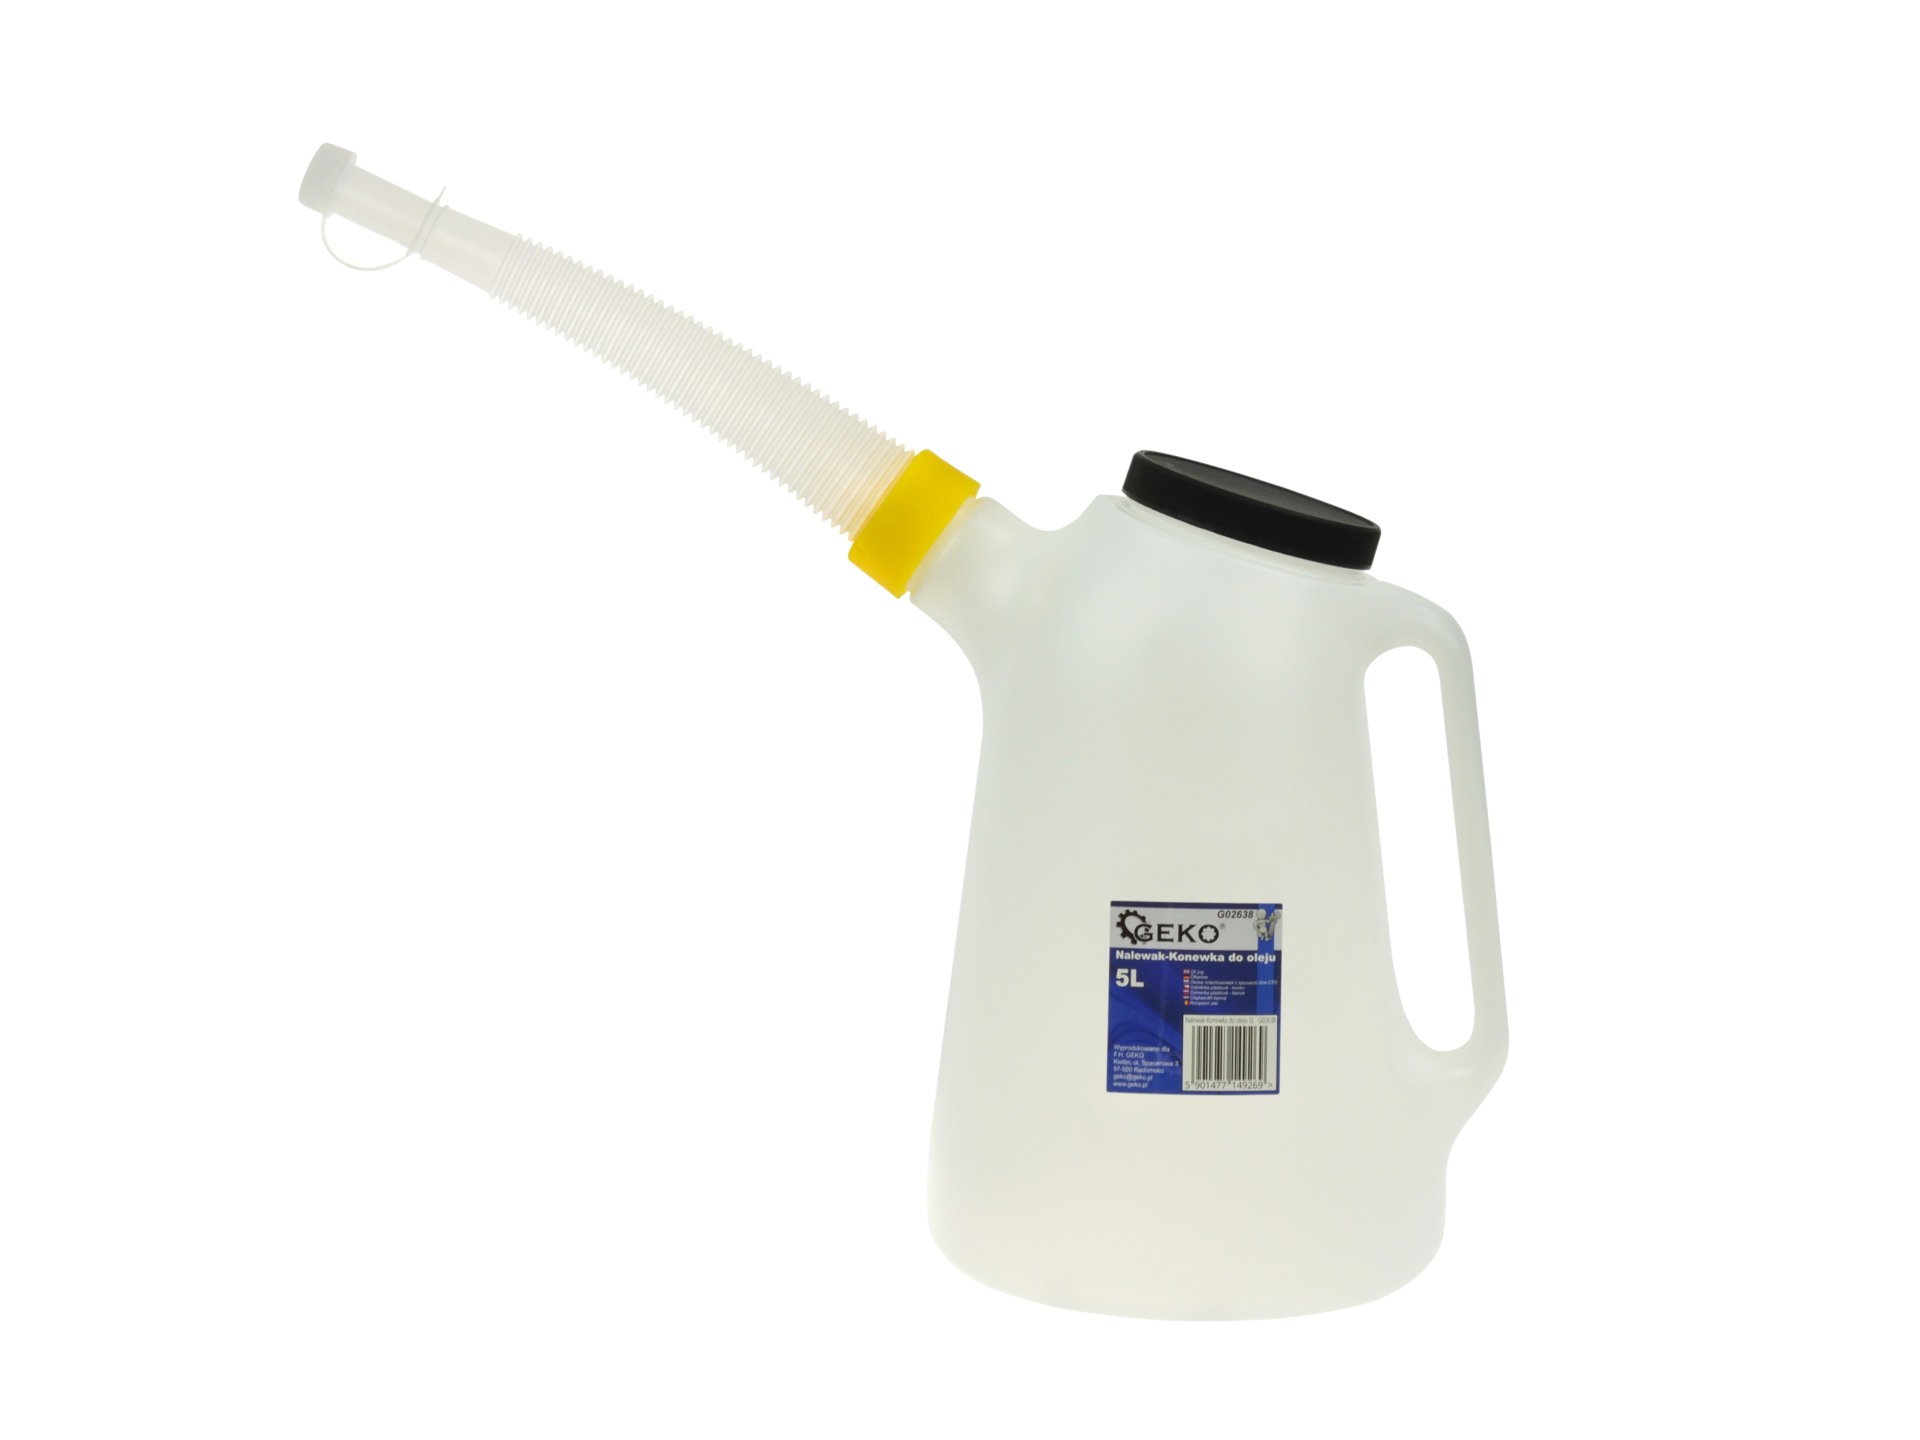 Olie-/ vloeistofkan met schenktuit - 5 Liter inhoud - GEKO